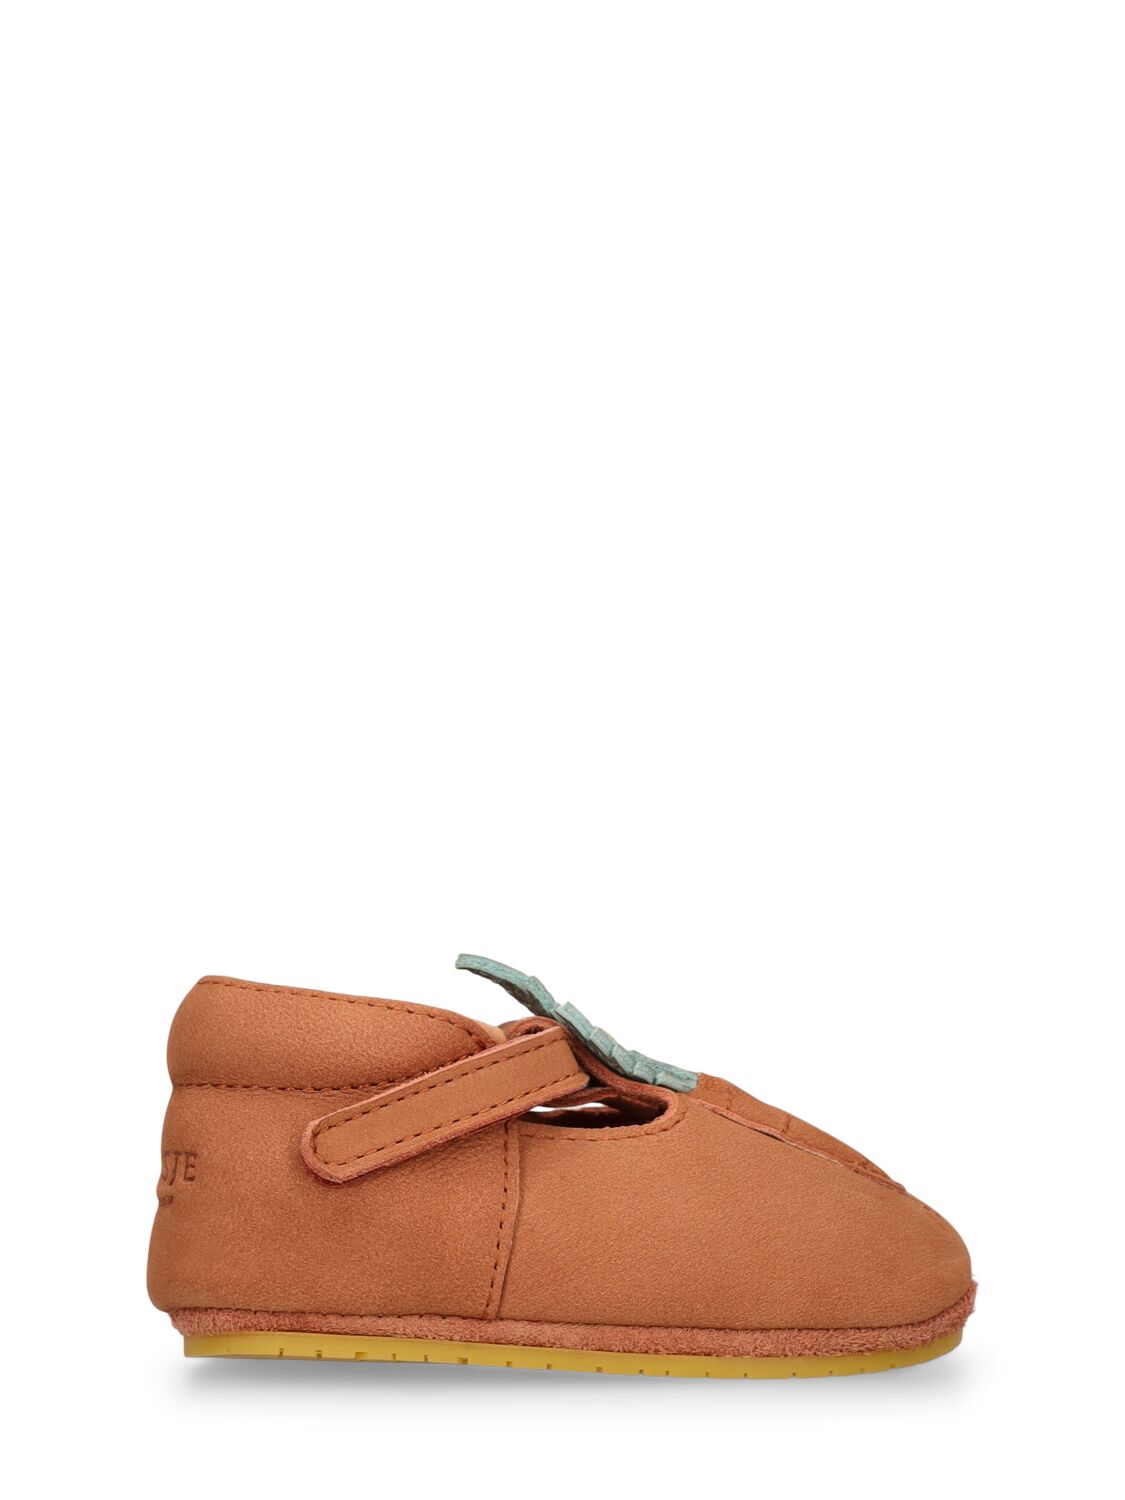 Donsje Babies' Carrot Leather Pre-walker Shoes In Brown